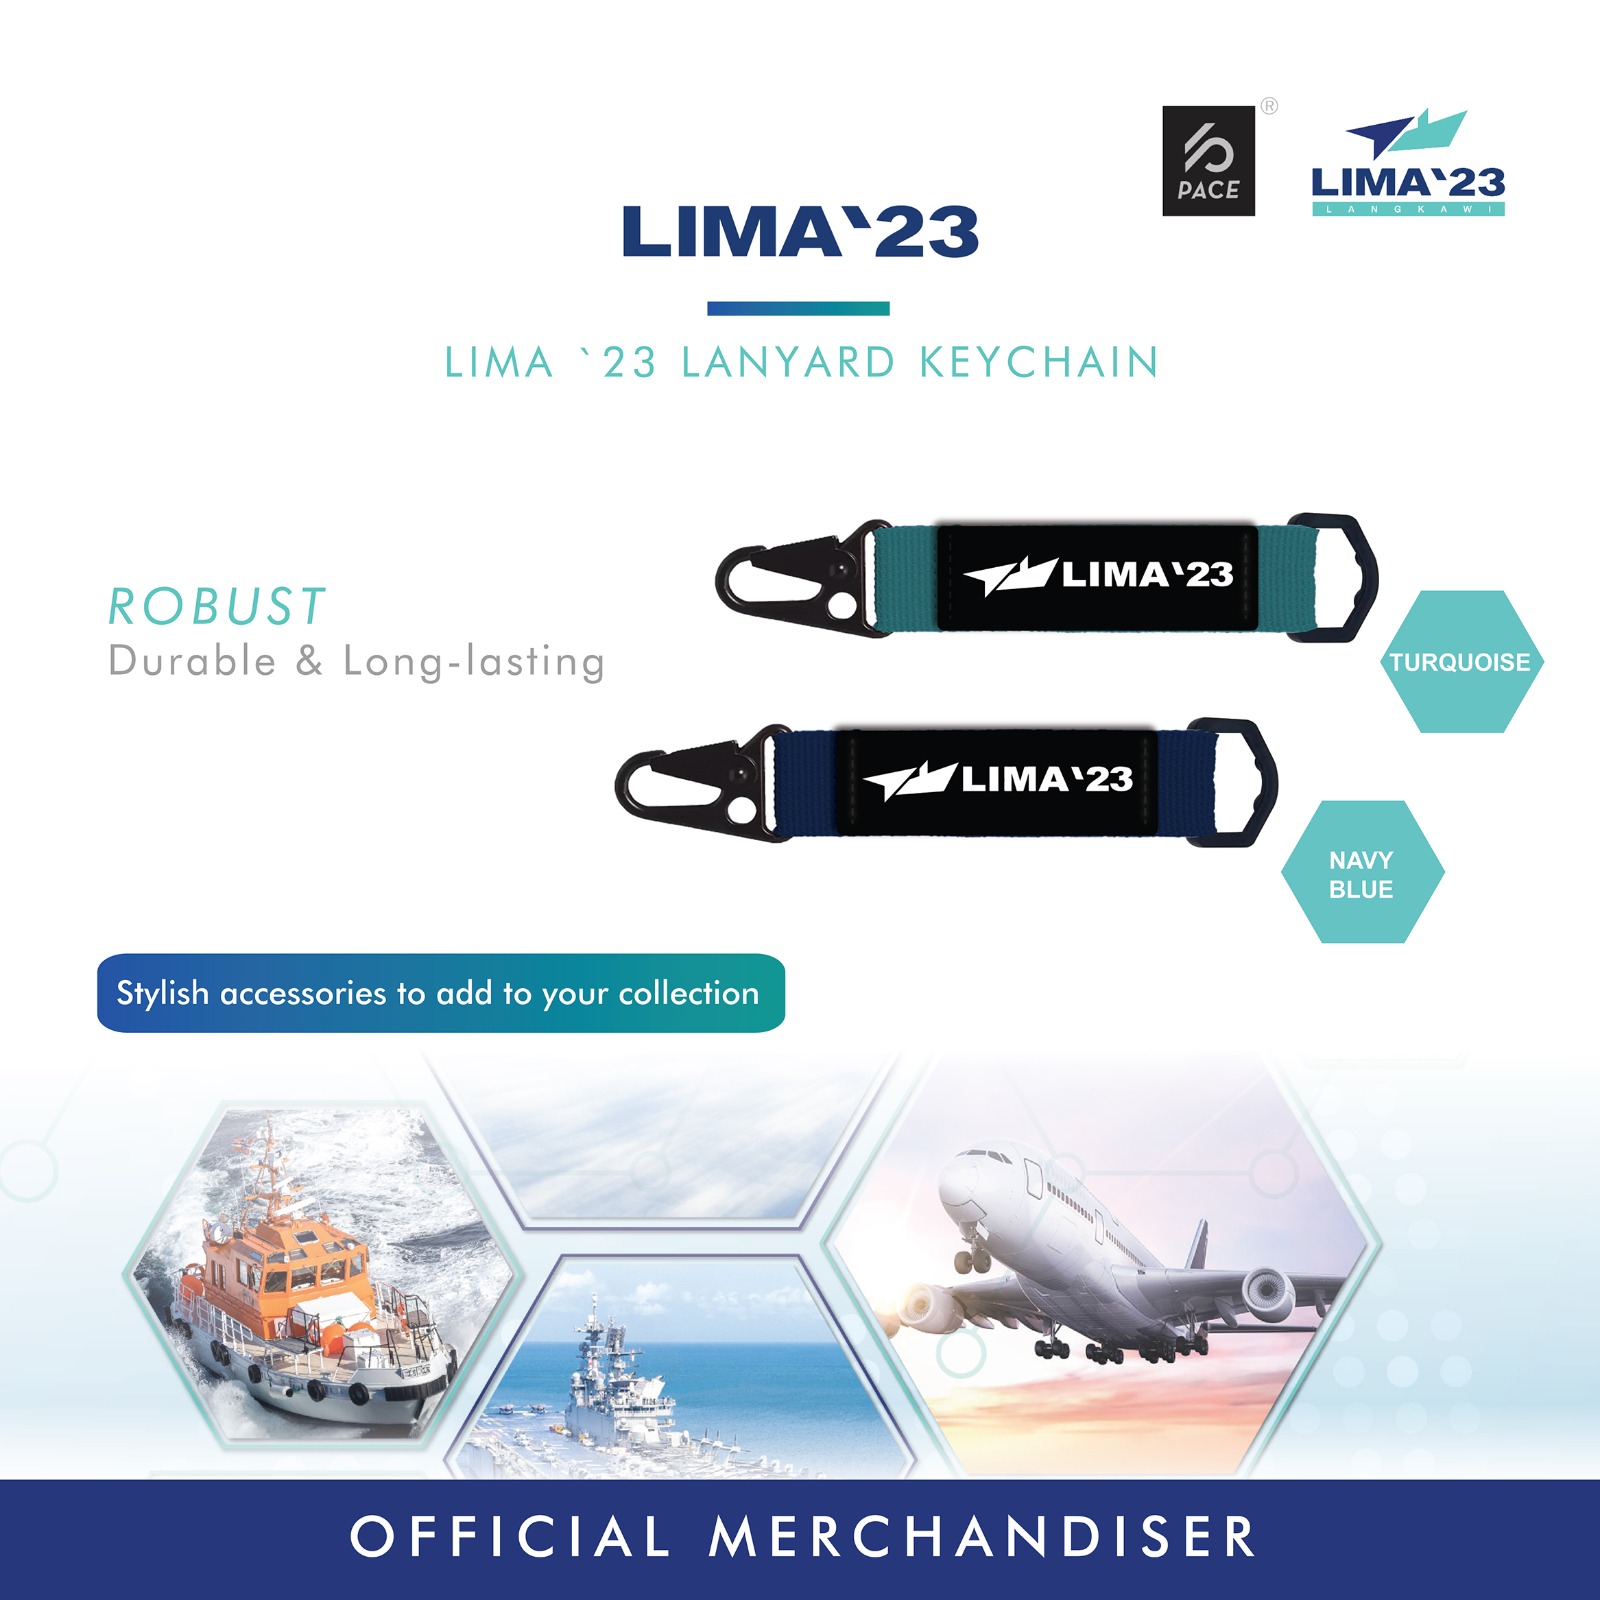 LIMA23 keychain